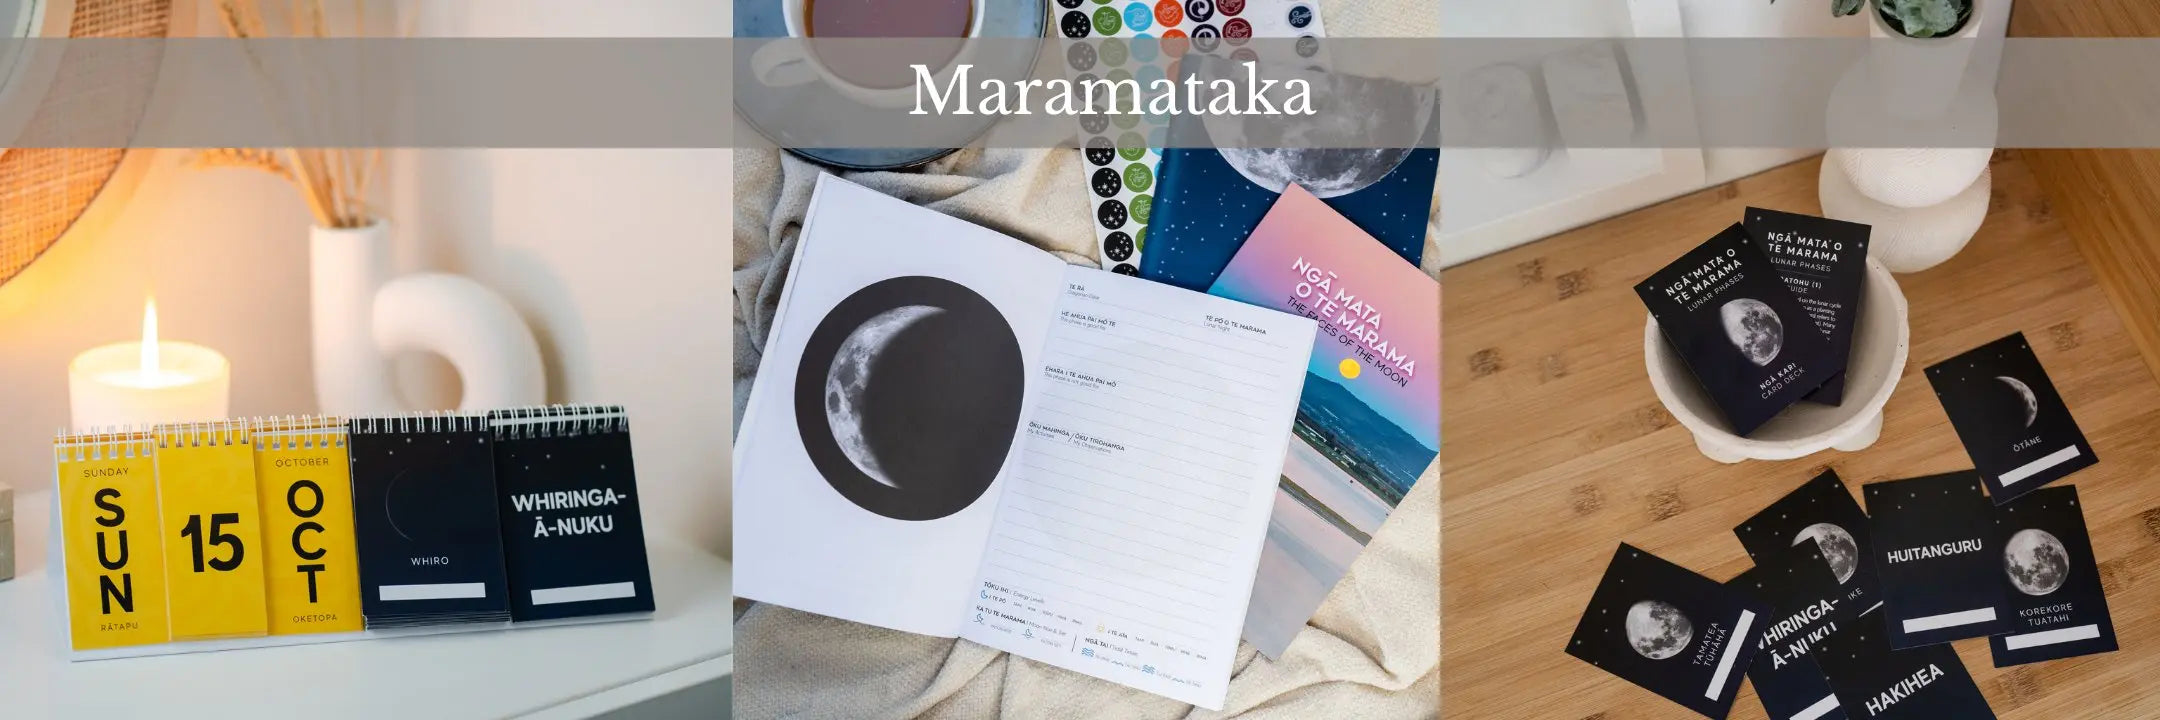 Maramataka (Lunar) Tuhi Stationery Ltd